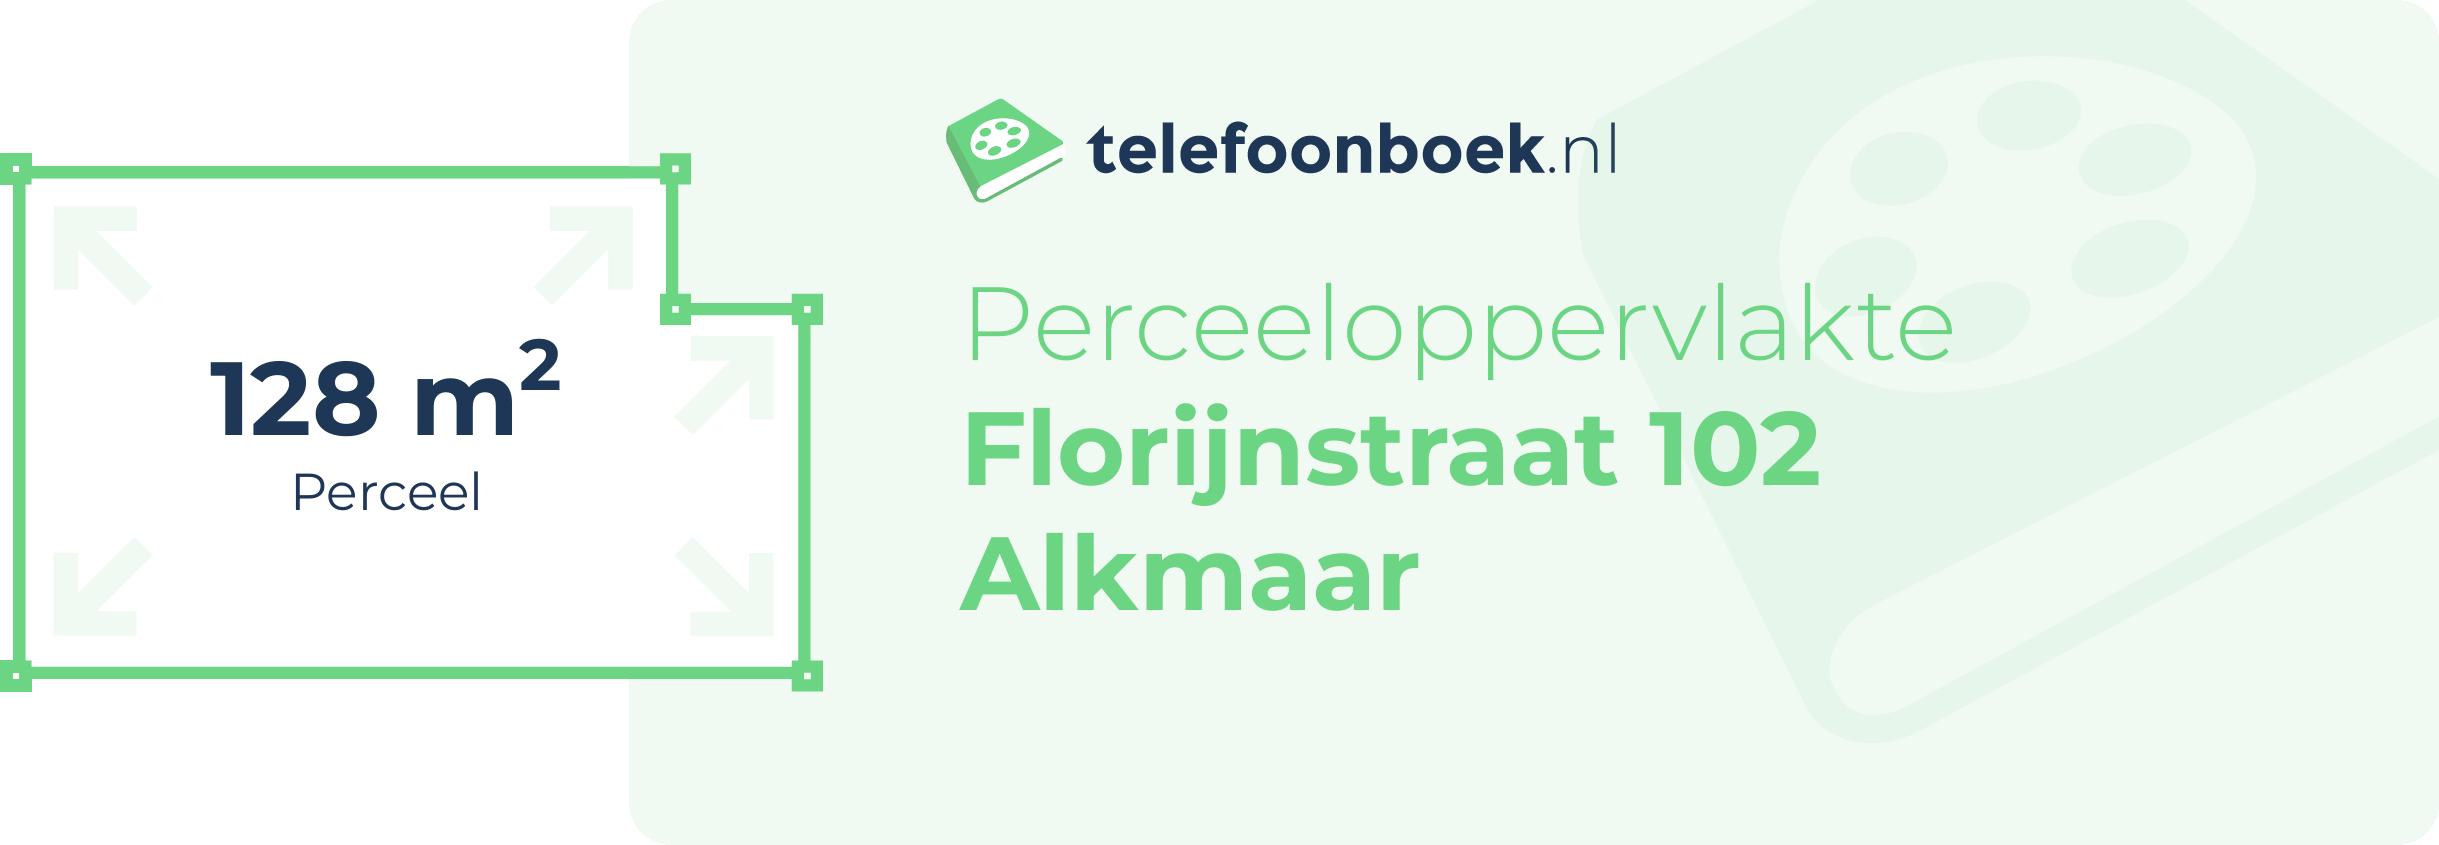 Perceeloppervlakte Florijnstraat 102 Alkmaar